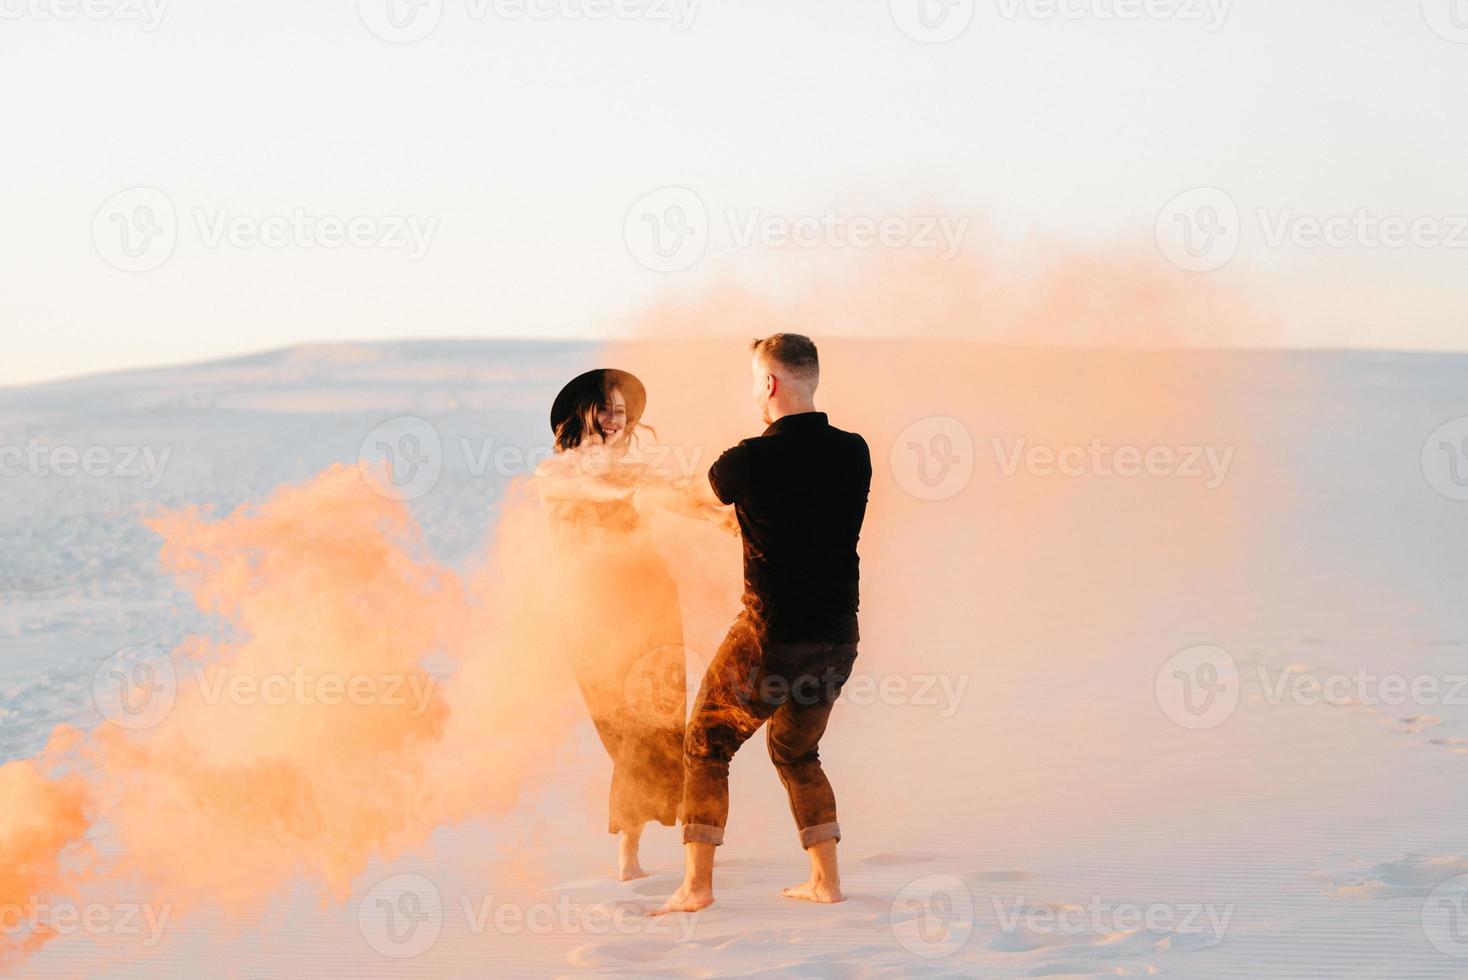 mec et une fille en vêtements noirs étreignent et courent sur le sable blanc avec de la fumée orange photo